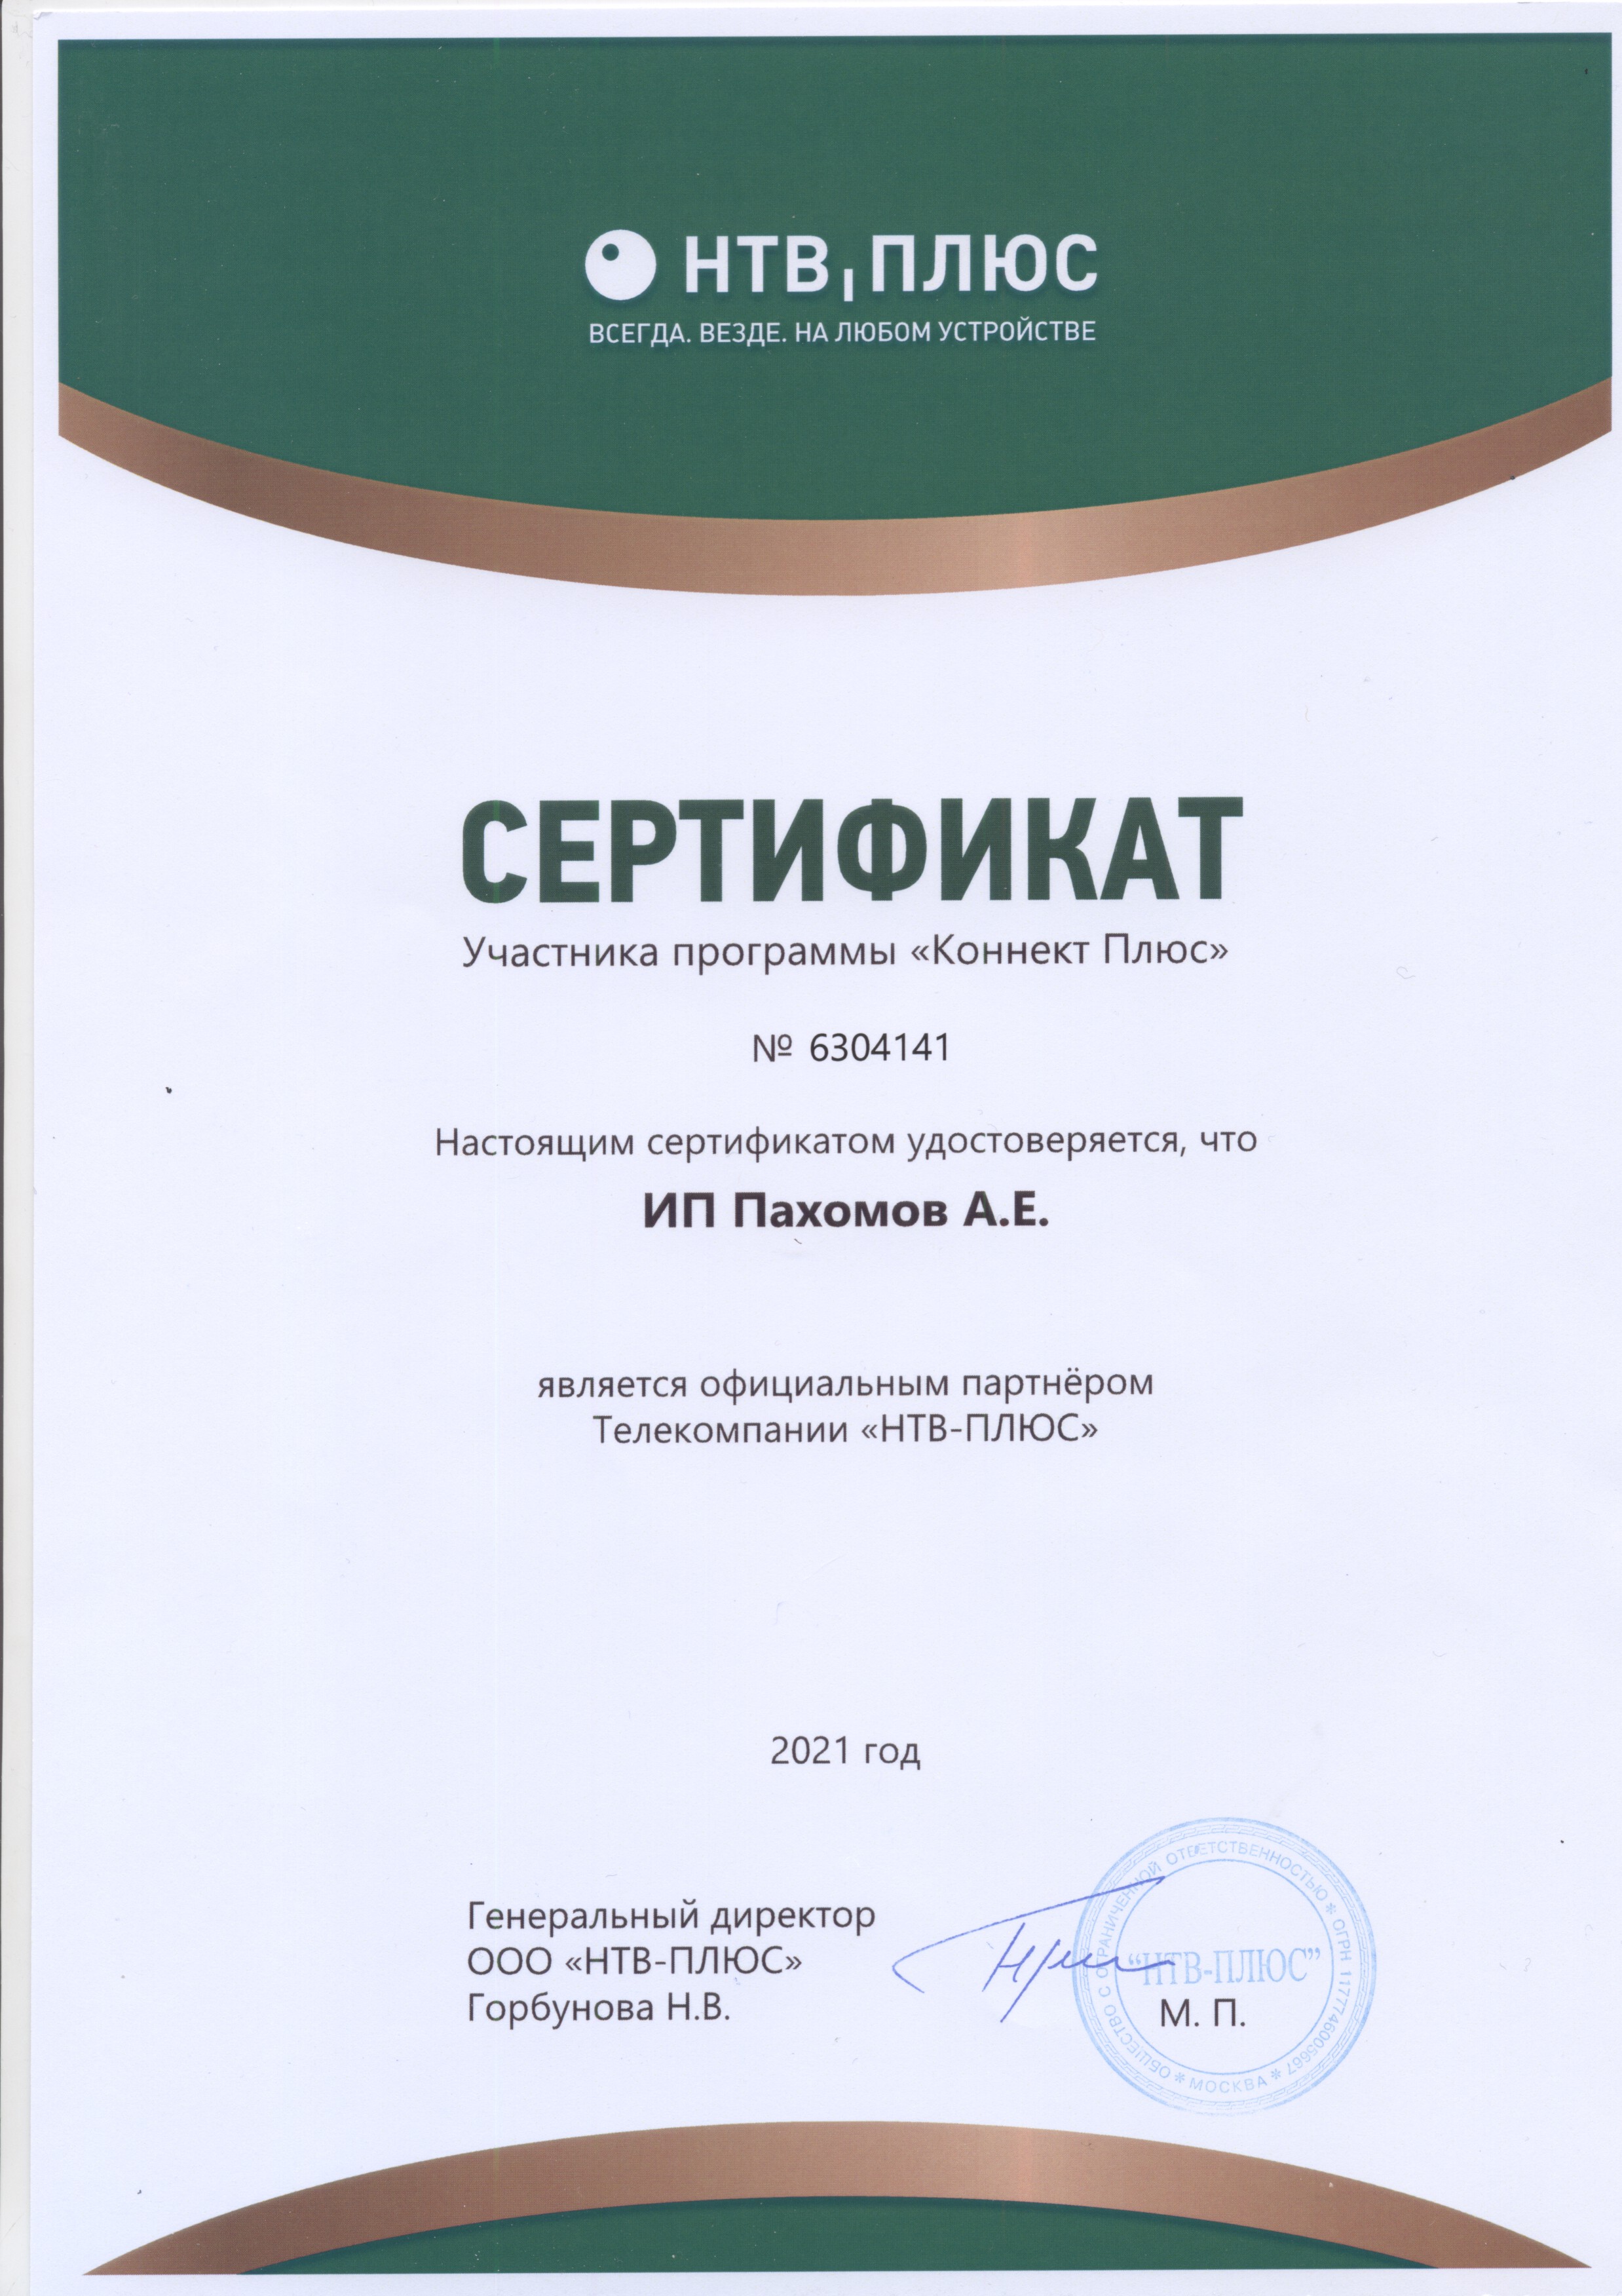 Сертификат официального партнера Телекомпании НТВ-ПЛЮС